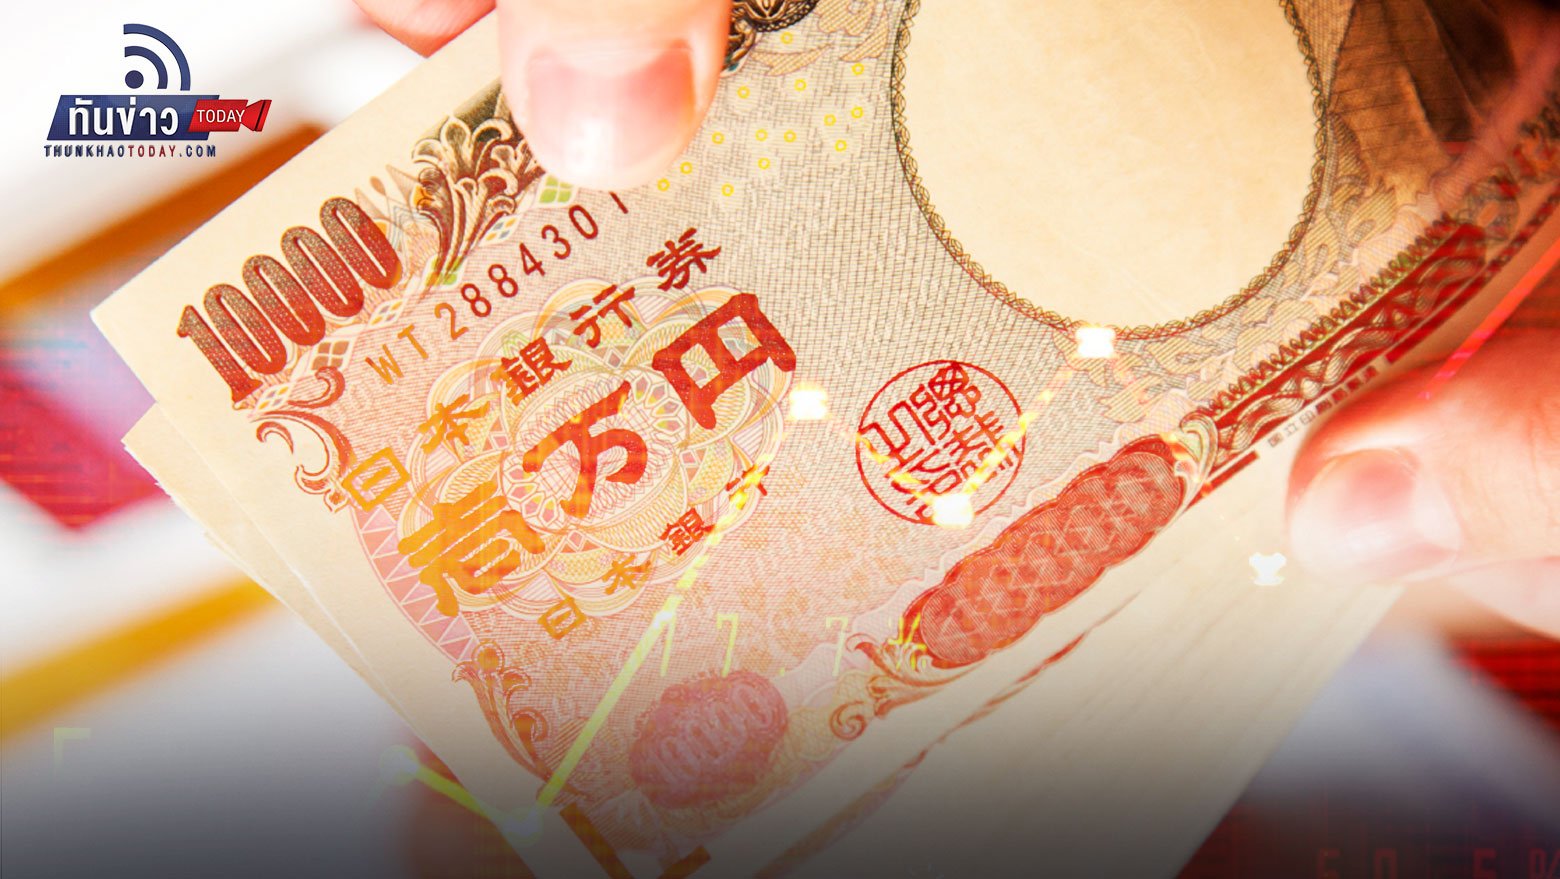 เตือนเสี่ยงเกิด “วิกฤตการเงิน” ในภูมิภาคเอเชีย หากเงินเยนอ่อนค่าแตะ 150 เยนต่อดอลลาร์